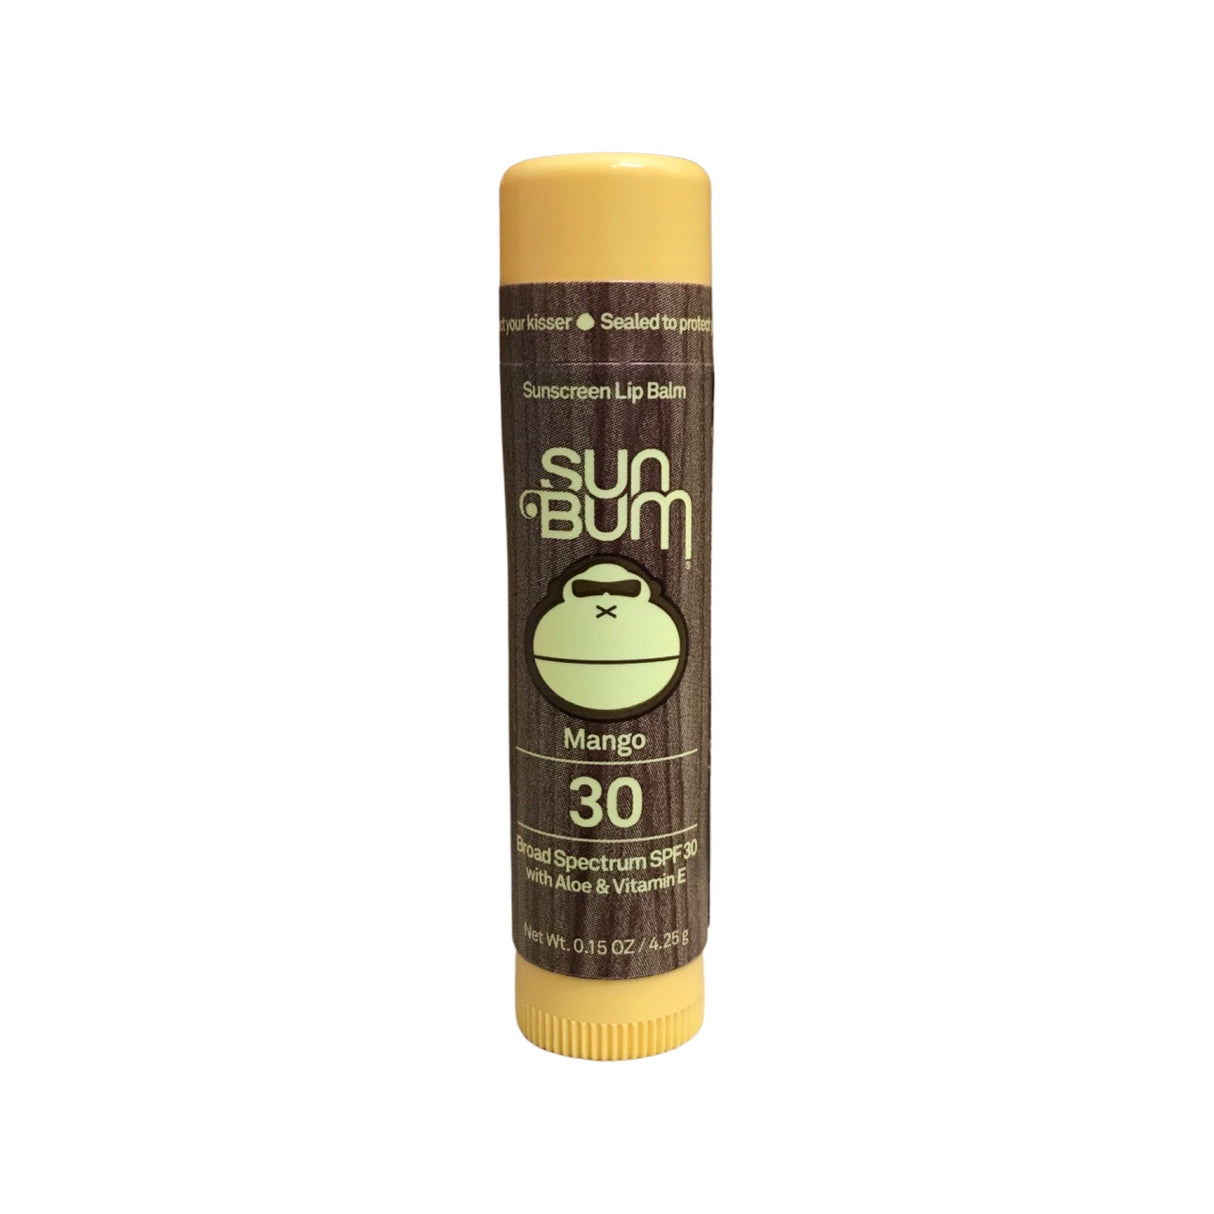 Sun Bum Mango Lip Balm - Broad Spectrum SPF 30 W/ Aloe & Vitamin E